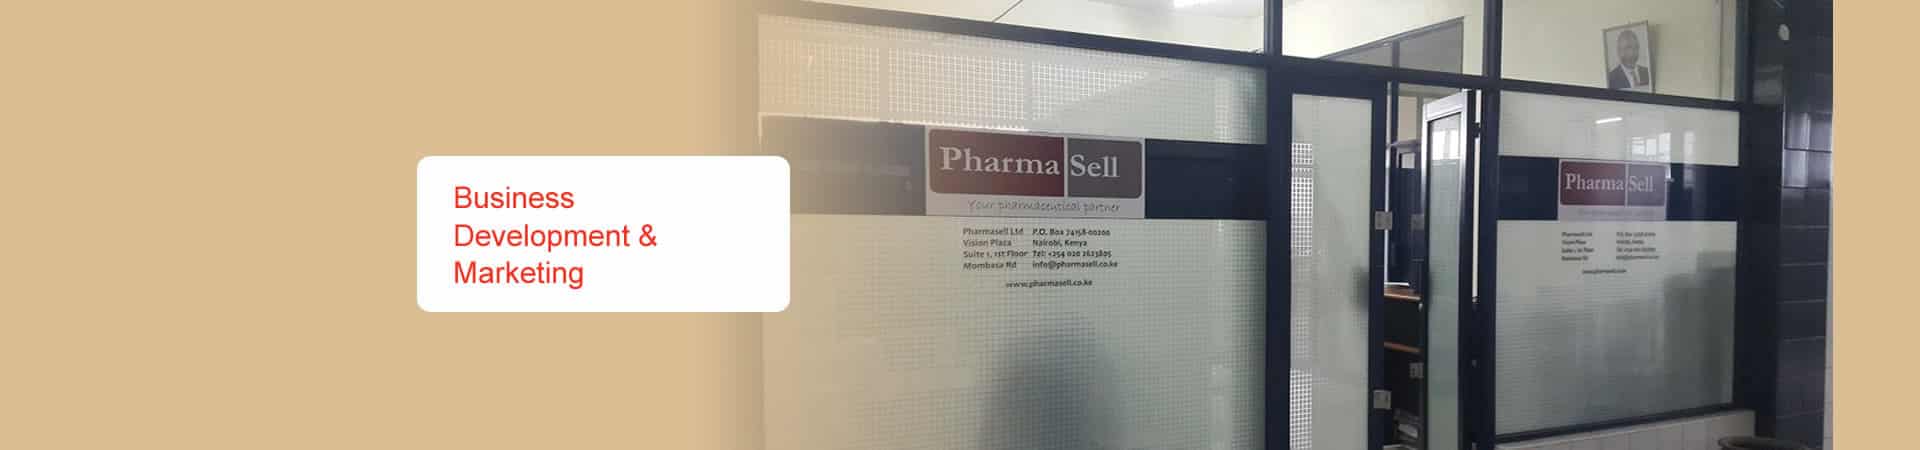 Pharmasell Ltd